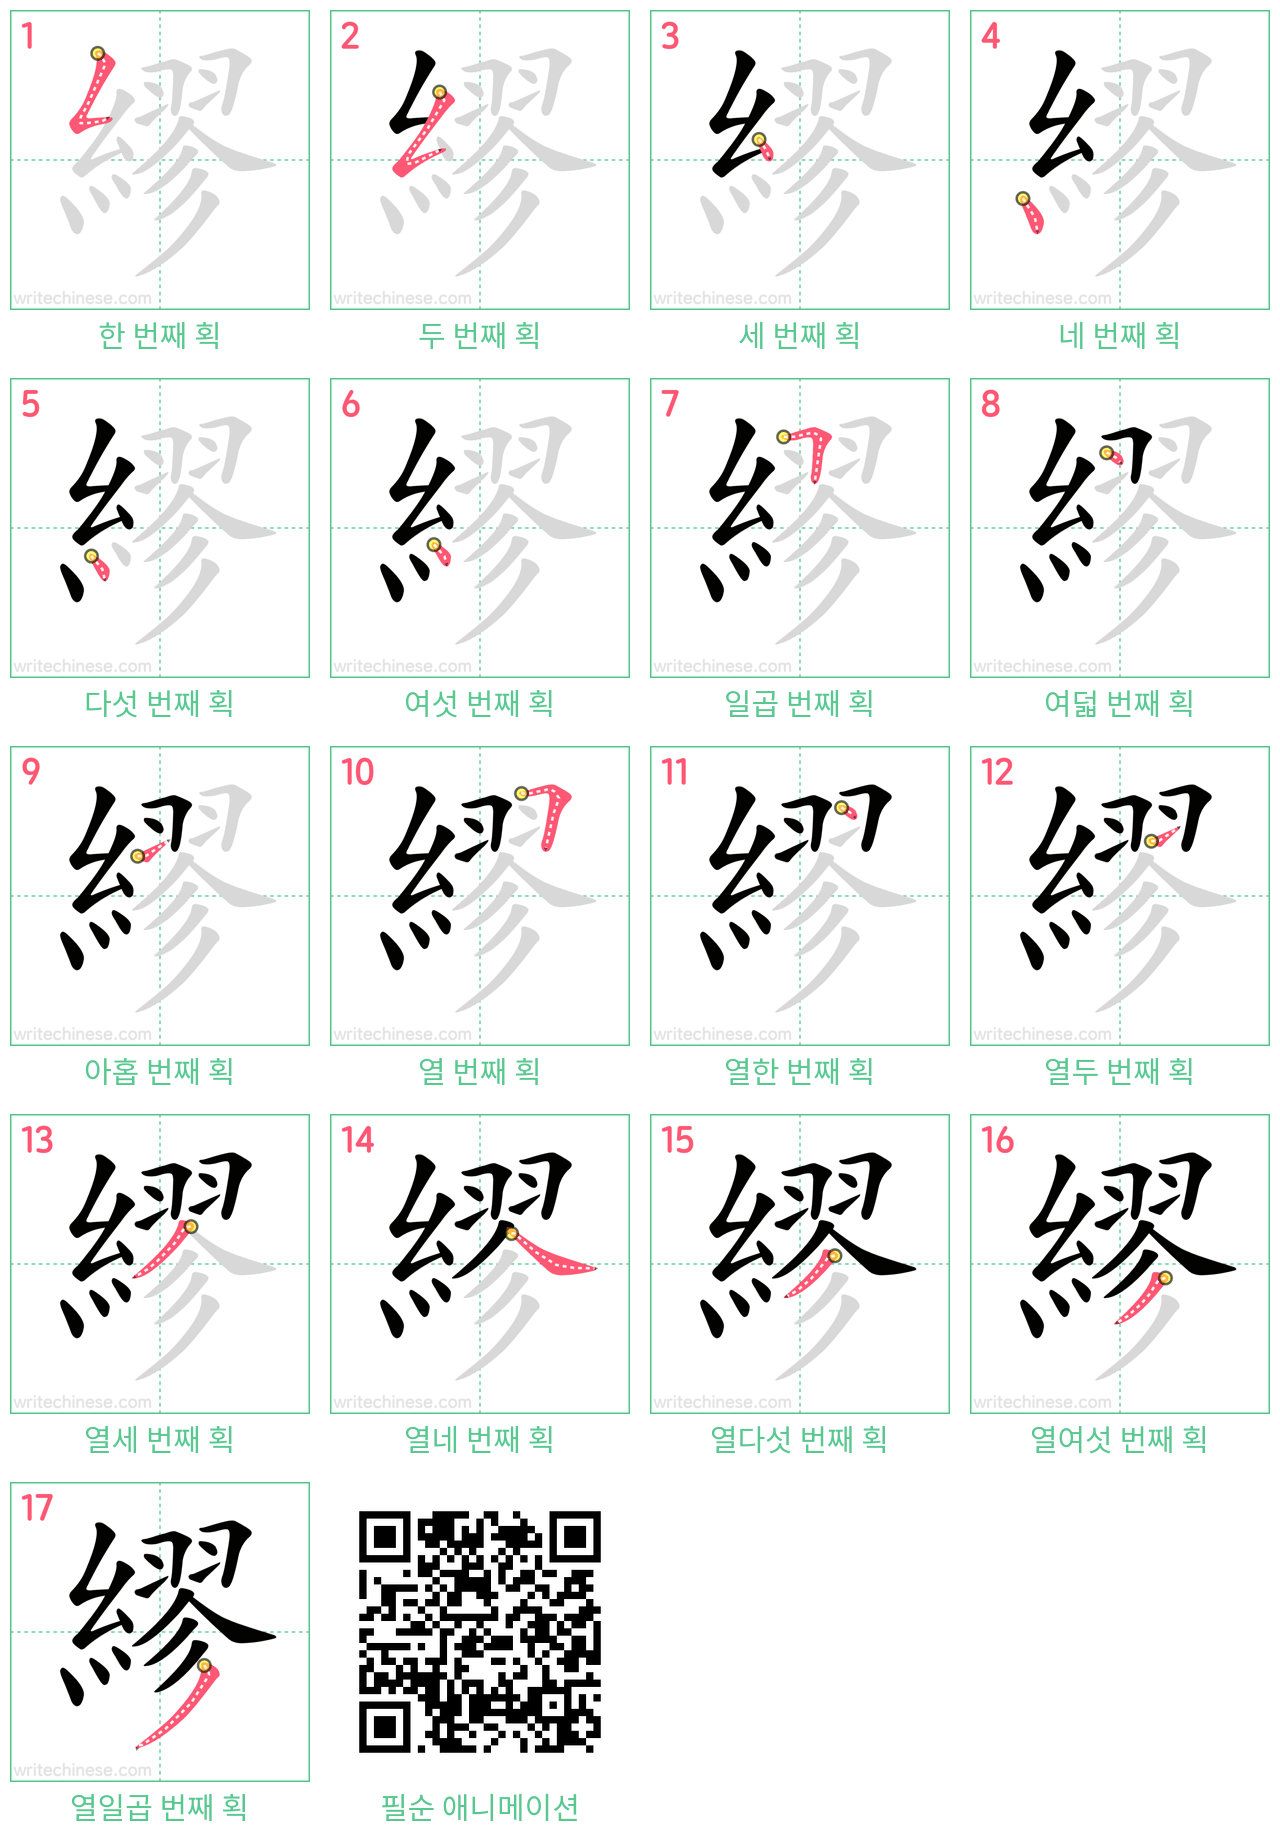 繆 step-by-step stroke order diagrams